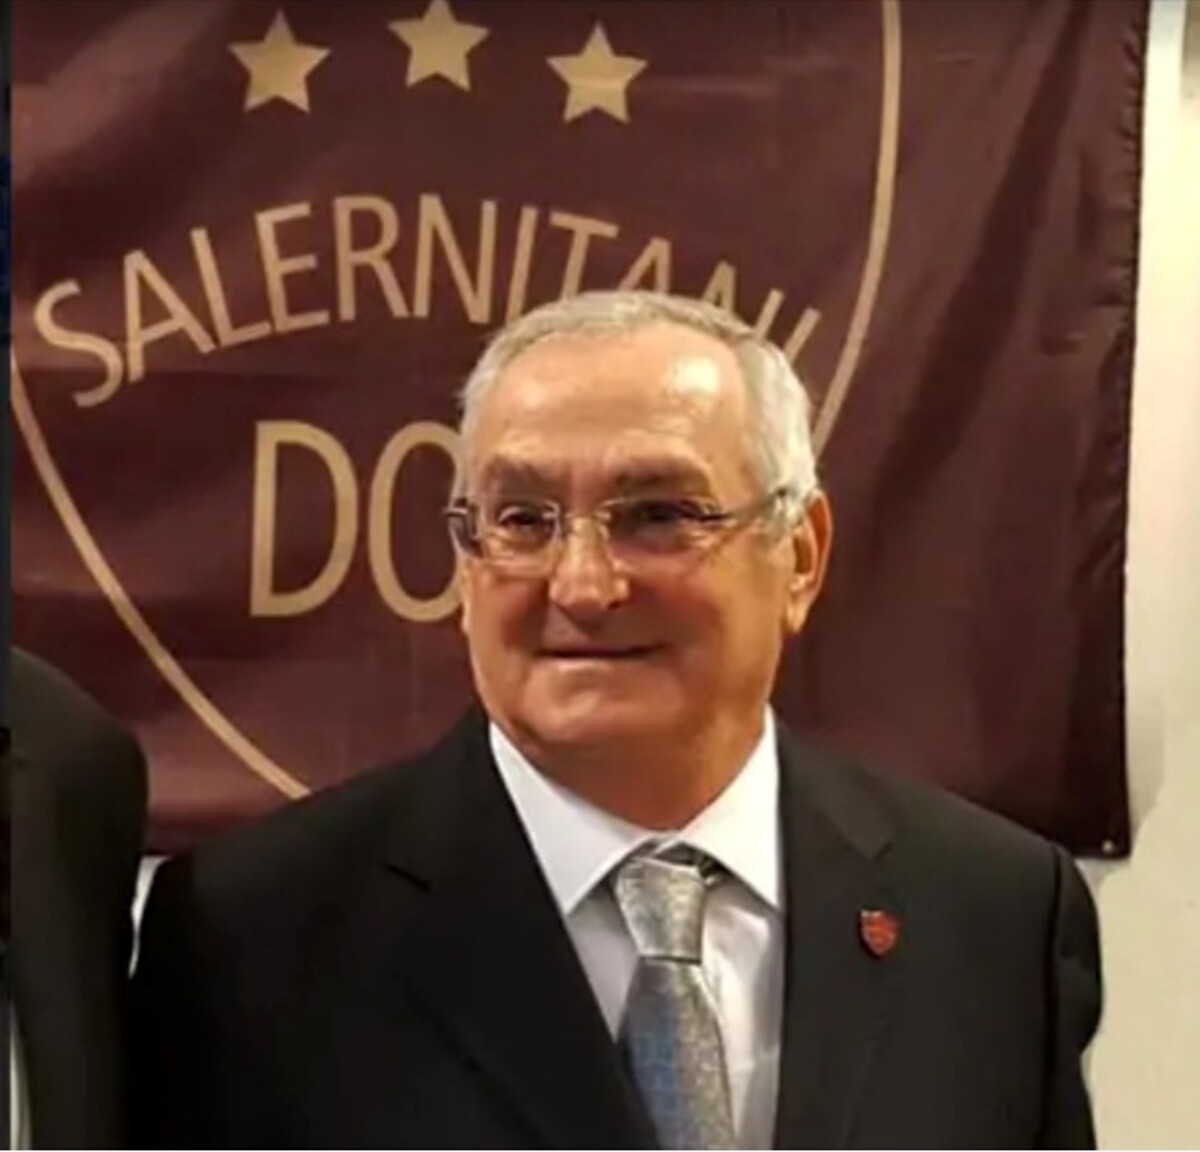 Solidarietà e promozione sociale, torna il premio “Salernitani Doc”